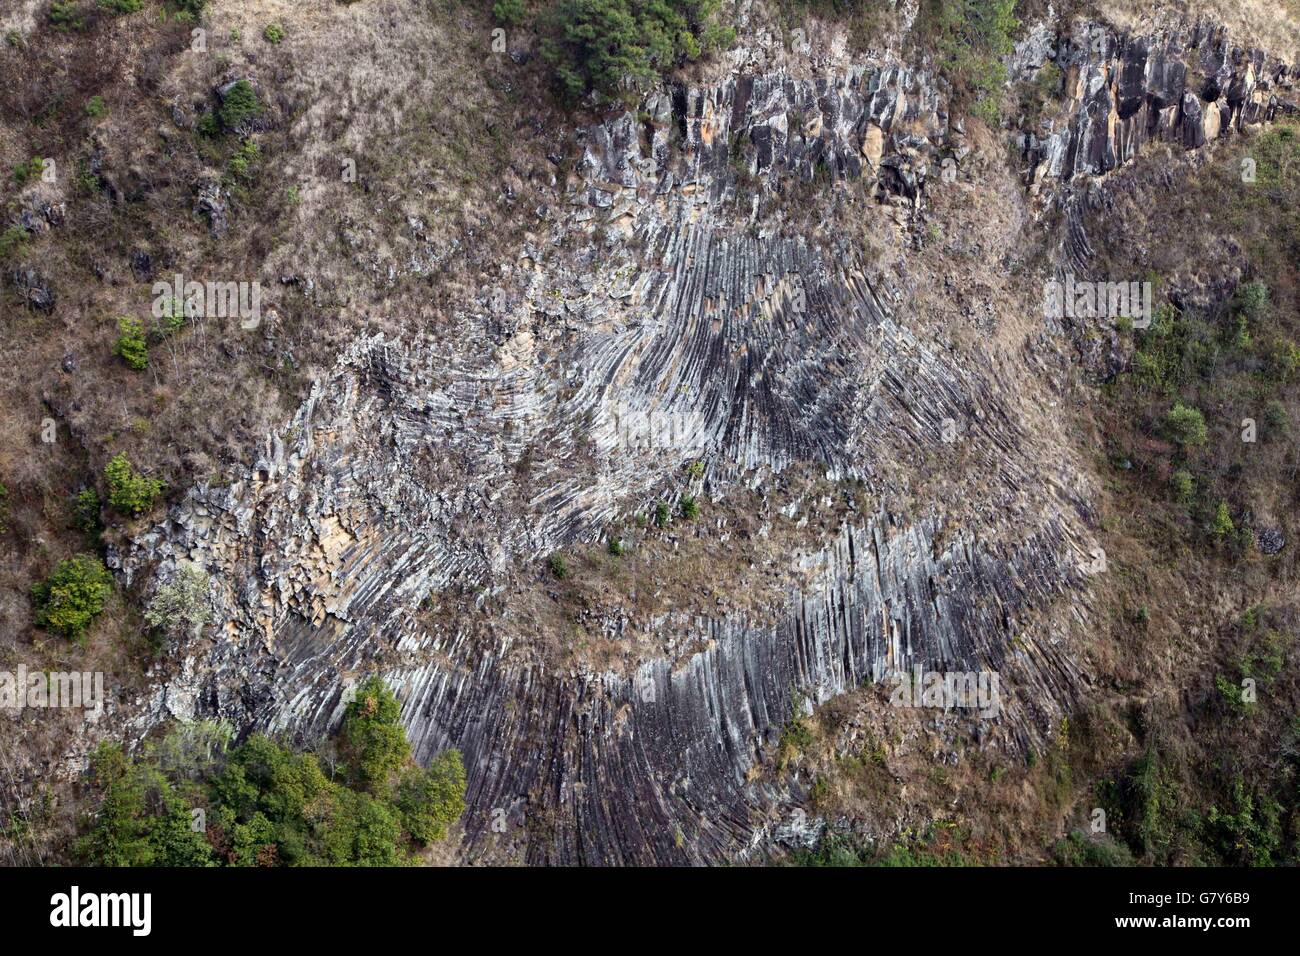 Tengchong, Tengchong, CHN. 13 Feb, 2016. Tengchong, China - El 13 de febrero de 2016: (Sólo para uso editorial. CHINA) engrapado columnar. Es una estructura geológica donde conjuntos de intersección fracturas poco espaciados, denominado juntas, dan como resultado la formación de una serie de prismas regulares poligonal, o columnas. Engrapado columnar ocurre en muchos tipos de rocas volcánicas y las formas como la roca se enfría y se contrae. Engrapado columnar puede ocurrir en los flujos de lava y refrigeración ashflow tobas (ignimbritas), así como en algunas intrusiones someras. © SIPA Asia/Zuma alambre/Alamy Live News Foto de stock